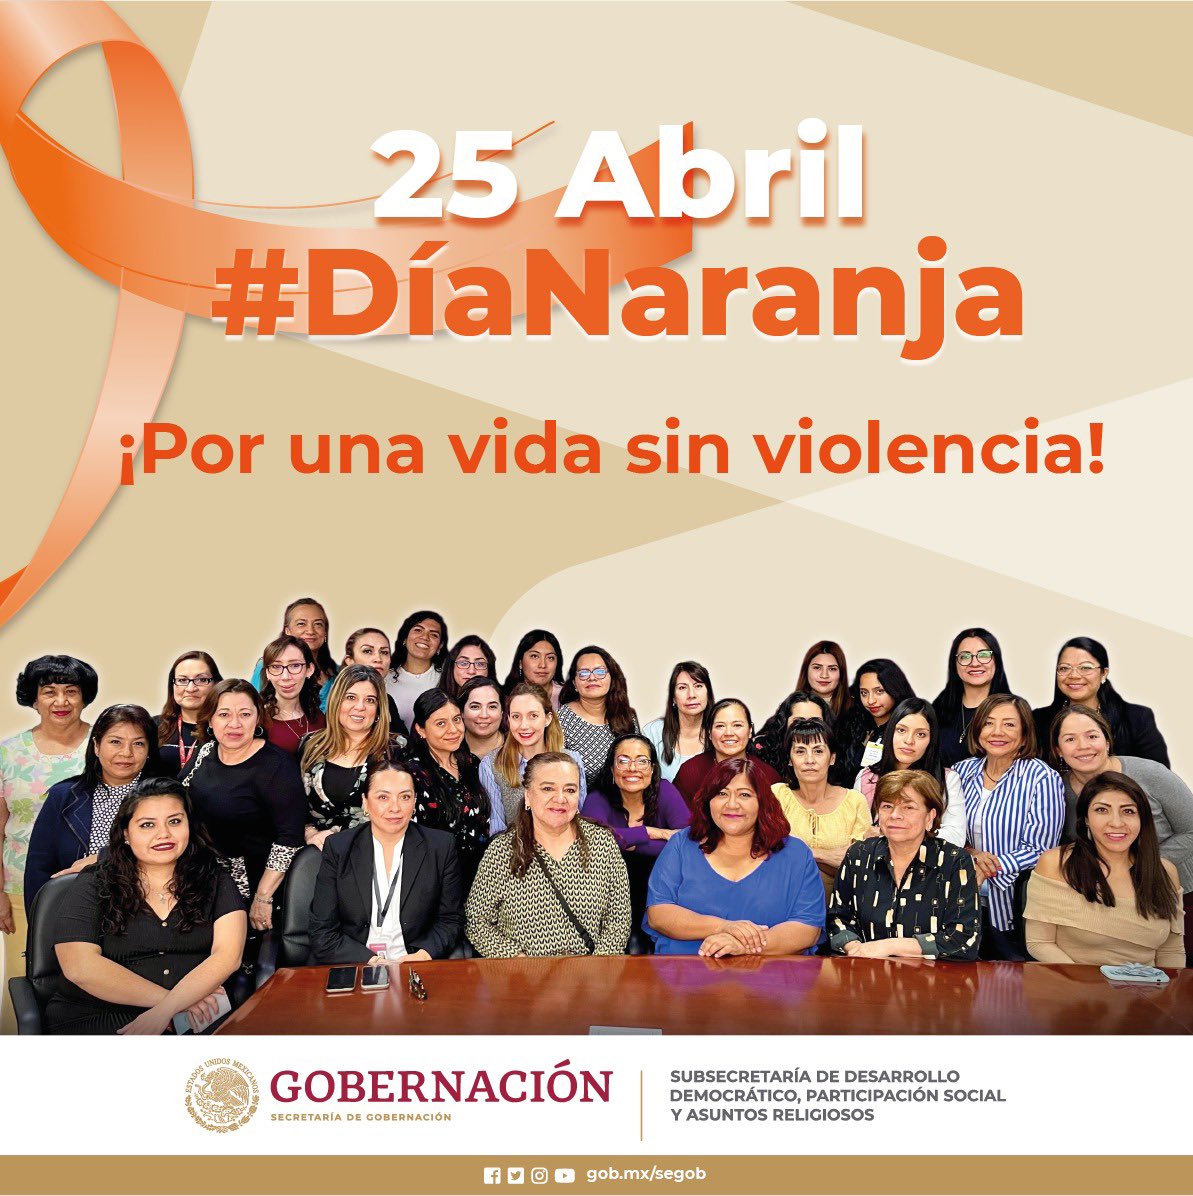 🟠 Hoy en el #DíaNaraja, reafirmamos nuestro compromiso y nos unimos a la acción de prevenir y erradicar la violencia contra las mujeres y niñas. 

Un horizonte lleno de esperanza y libre de agresiones. 🧡

#NoalaViolenciadeGénero
#GeneraciónIgualdad
#SDDPSyAR
#GobiernoDeMéxico